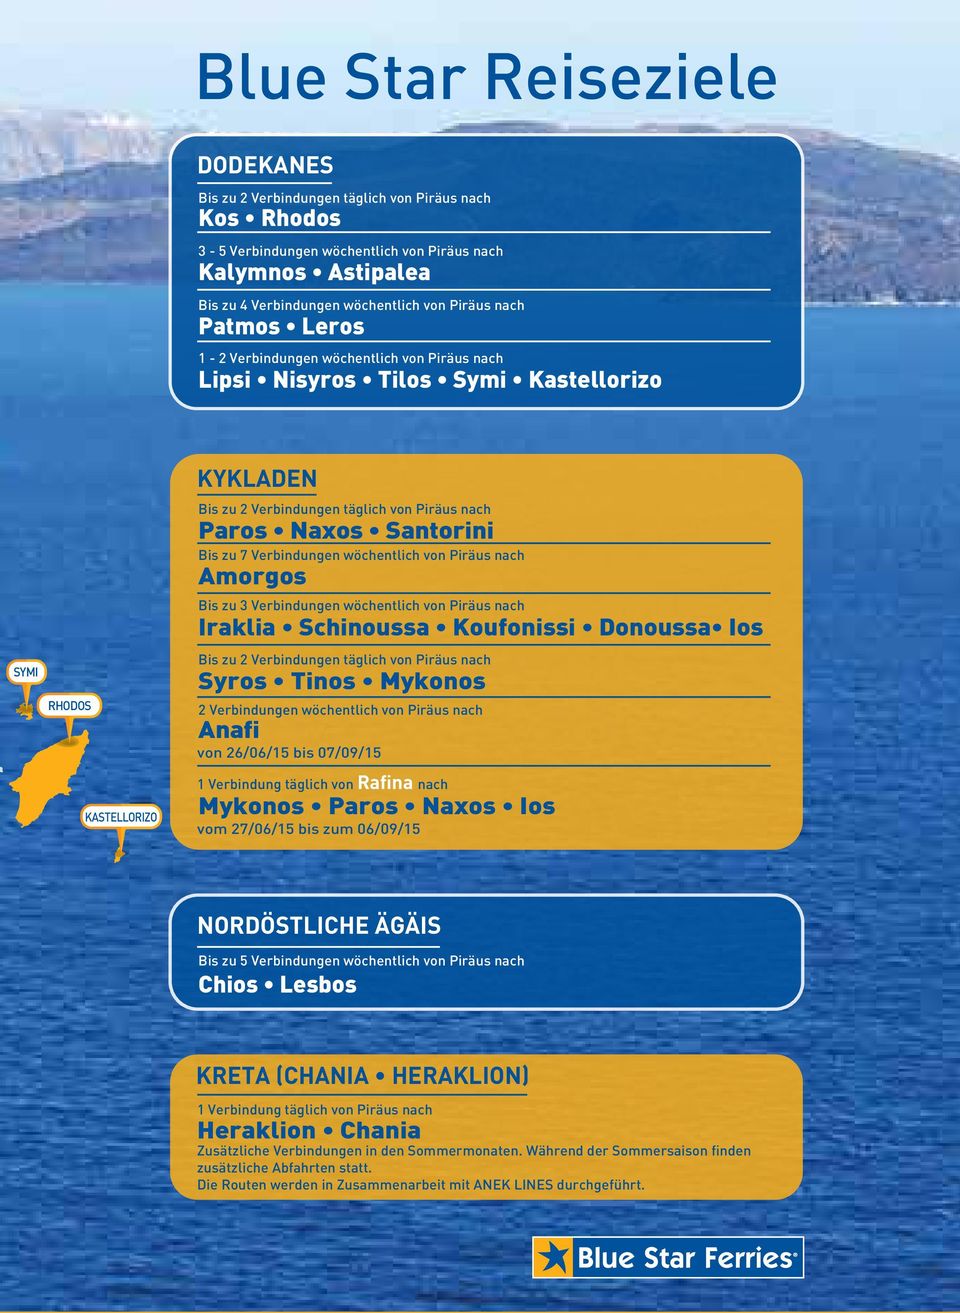 Santorini Bis zu 7 Verbindungen wöchentlich von Piräus nach Amorgos Bis zu 3 Verbindungen wöchentlich von Piräus nach Iraklia Schinoussa Koufonissi Donoussa Ios Bis zu 2 Verbindungen täglich von